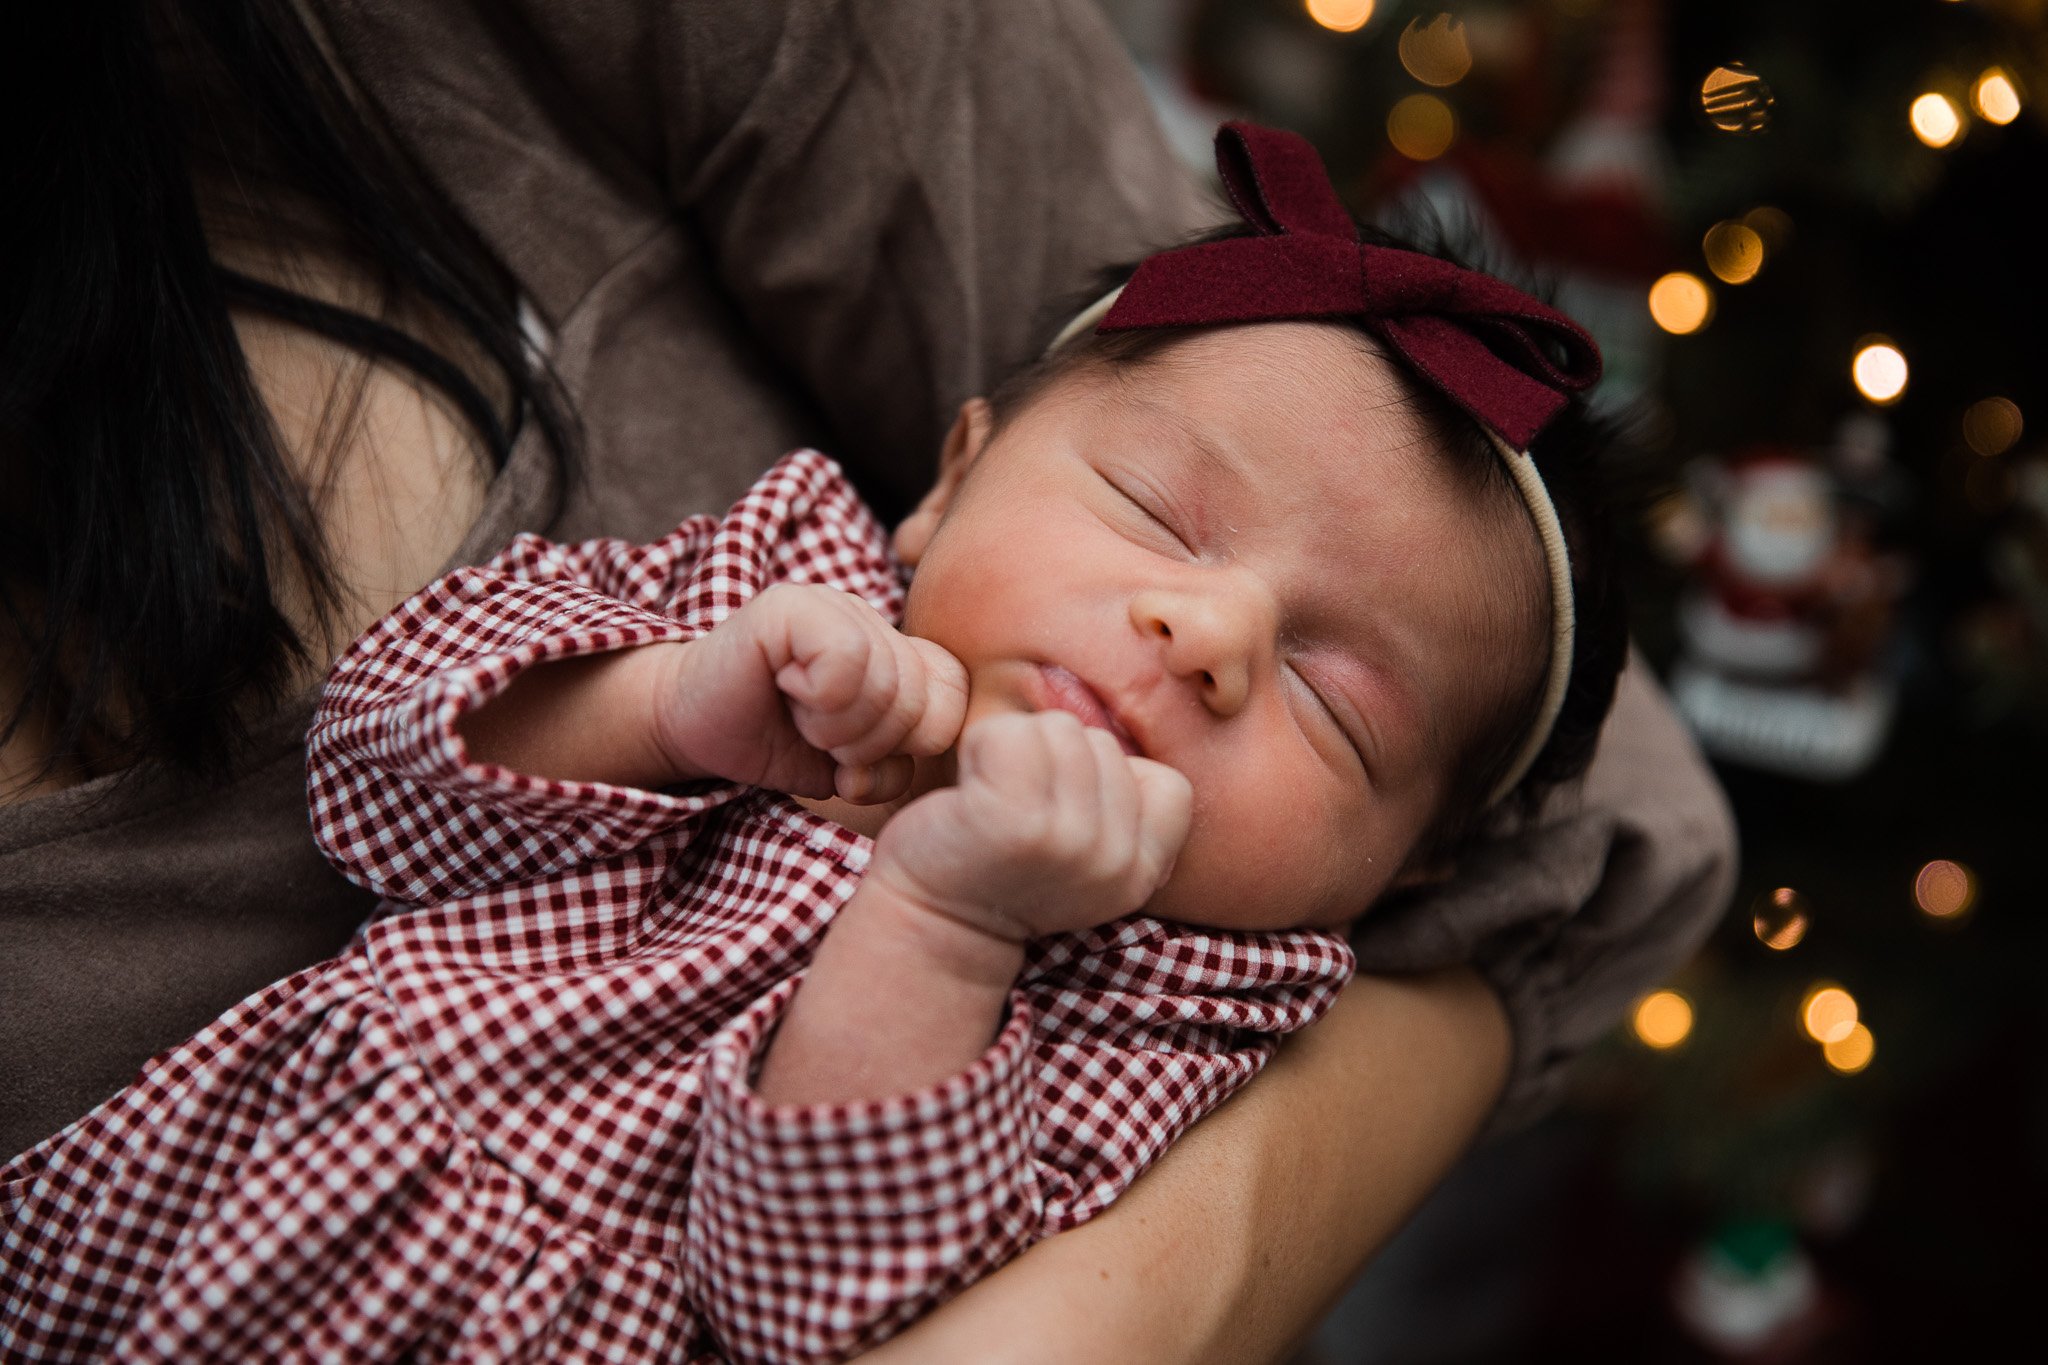 005_Michigan_Family_Photographer_Christmas_Newborn.jpg